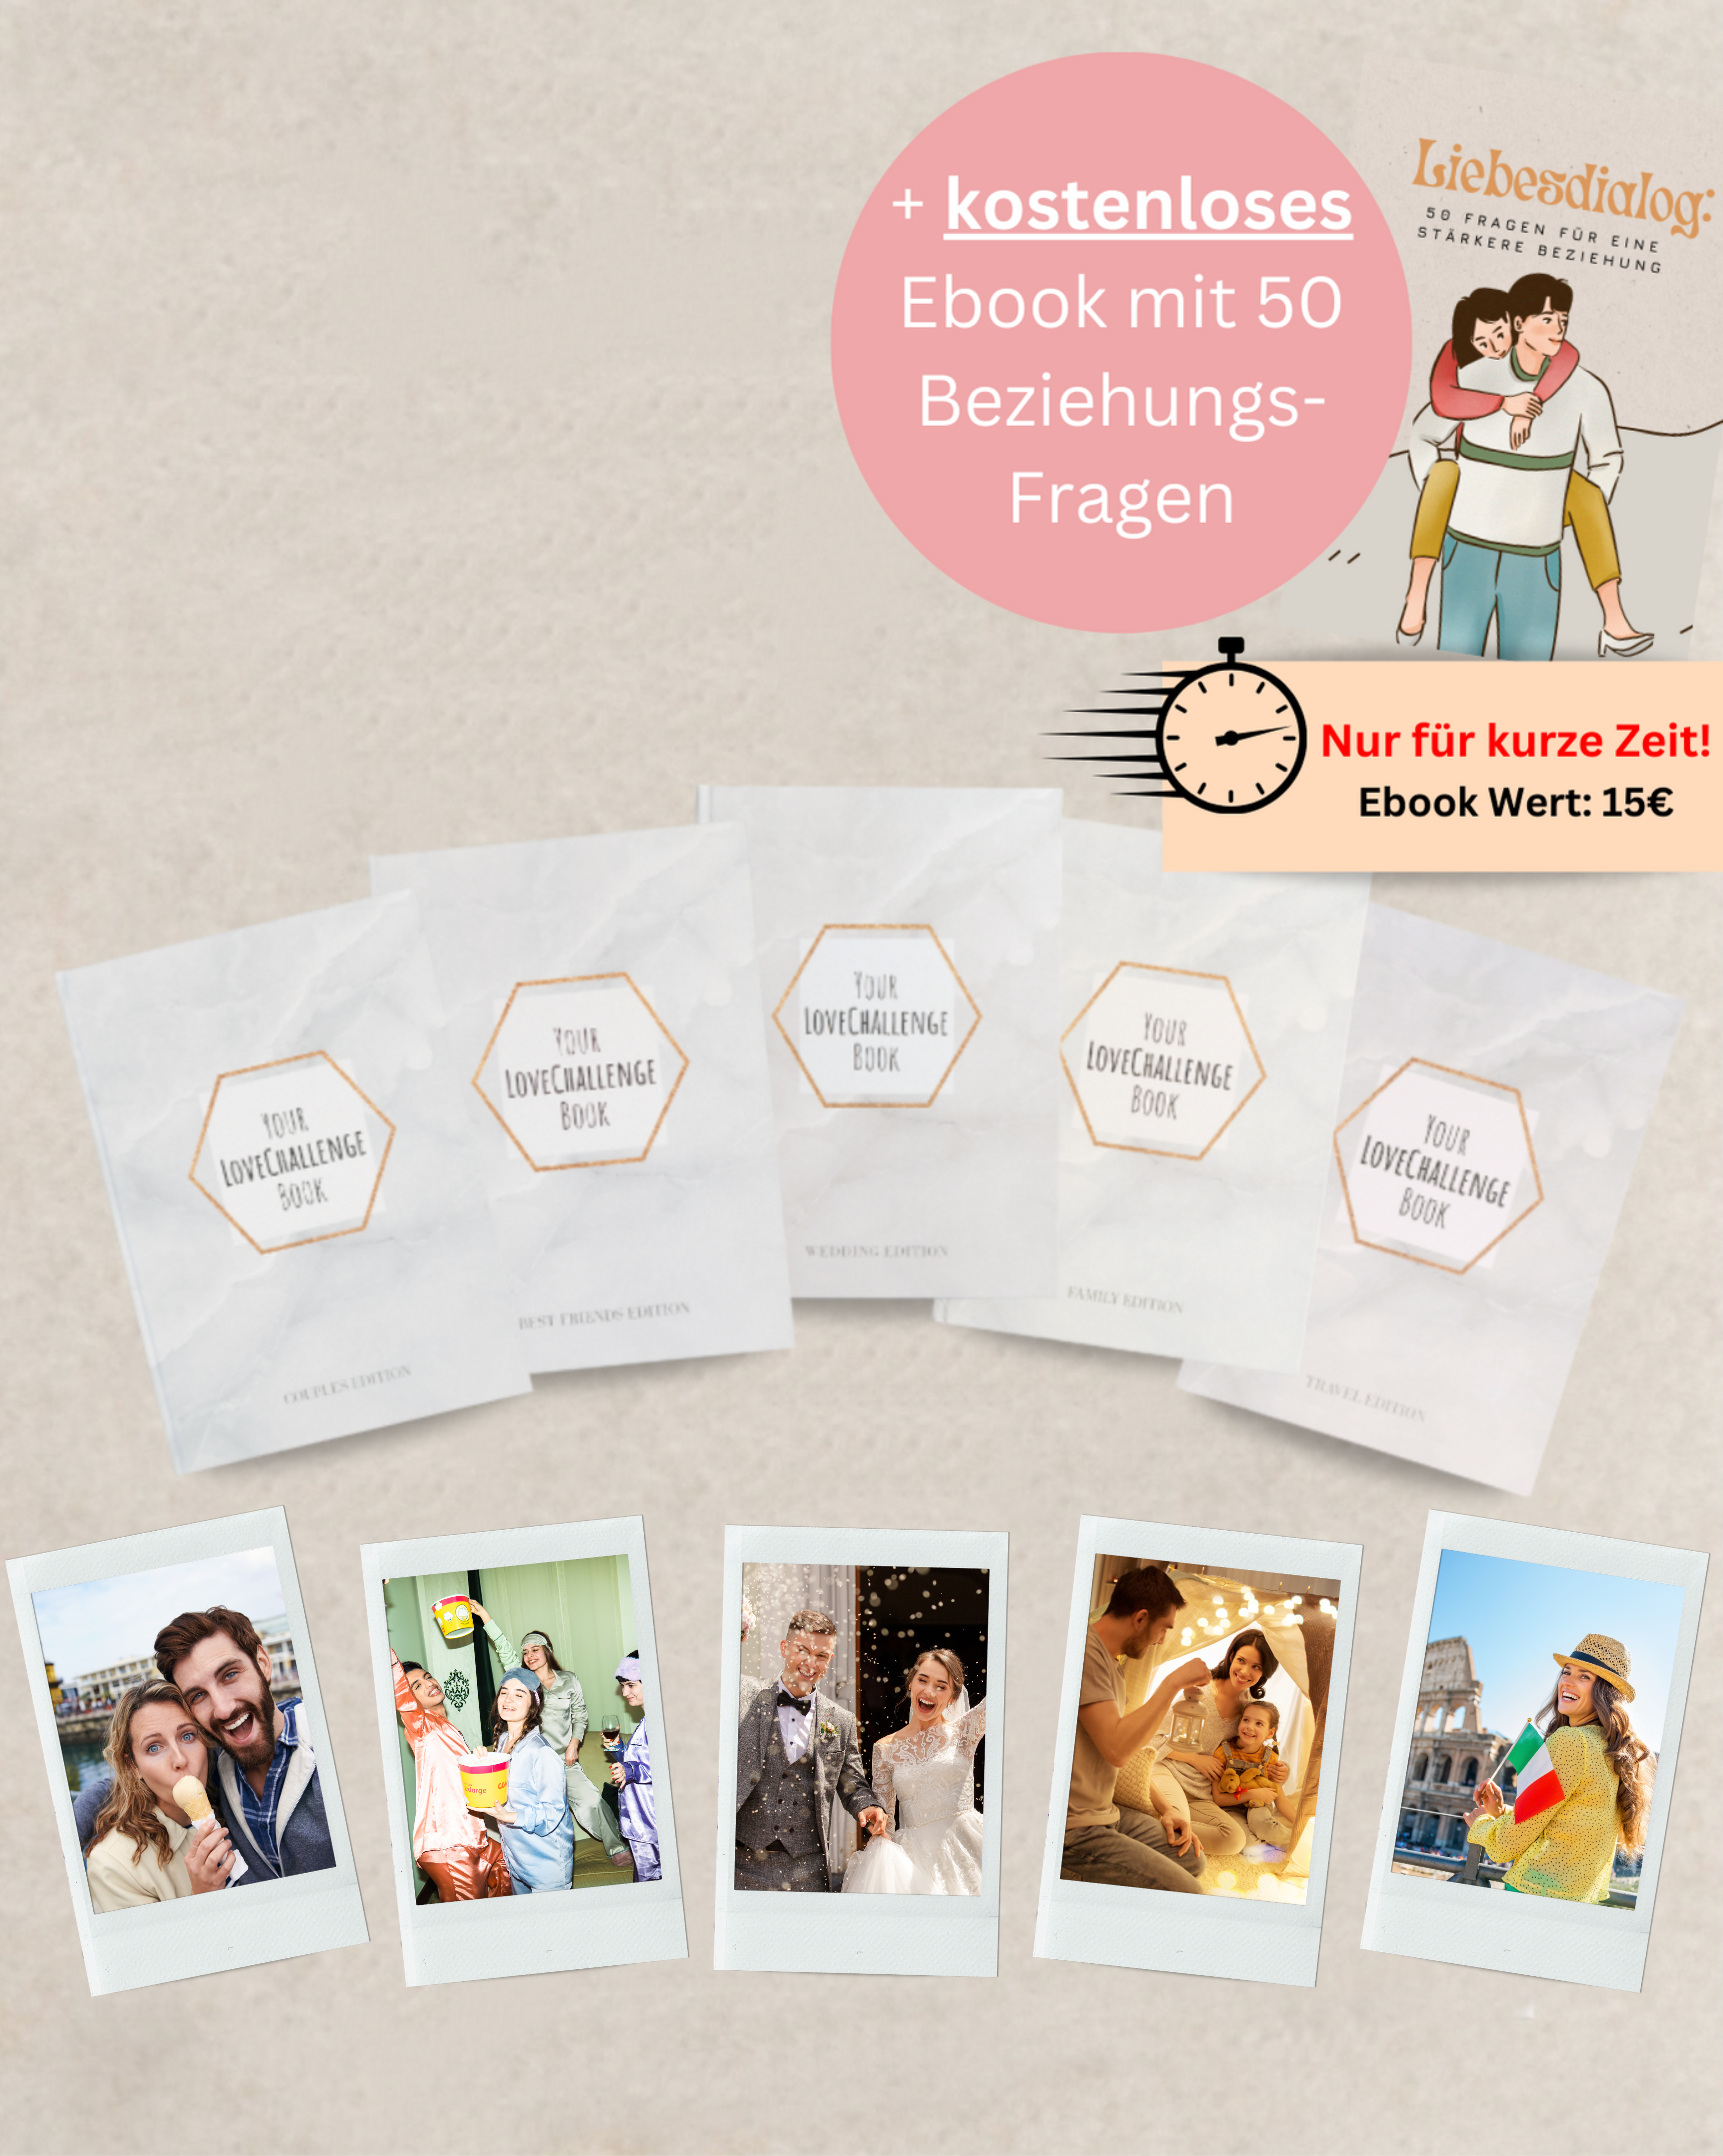 All in One Geschenk Bundle - (Paare + Freunde + Reisen + Familie + Hochzeits Edition + GRATIS Hochzeits Challenge Karten & Liebesdialog Ebook)